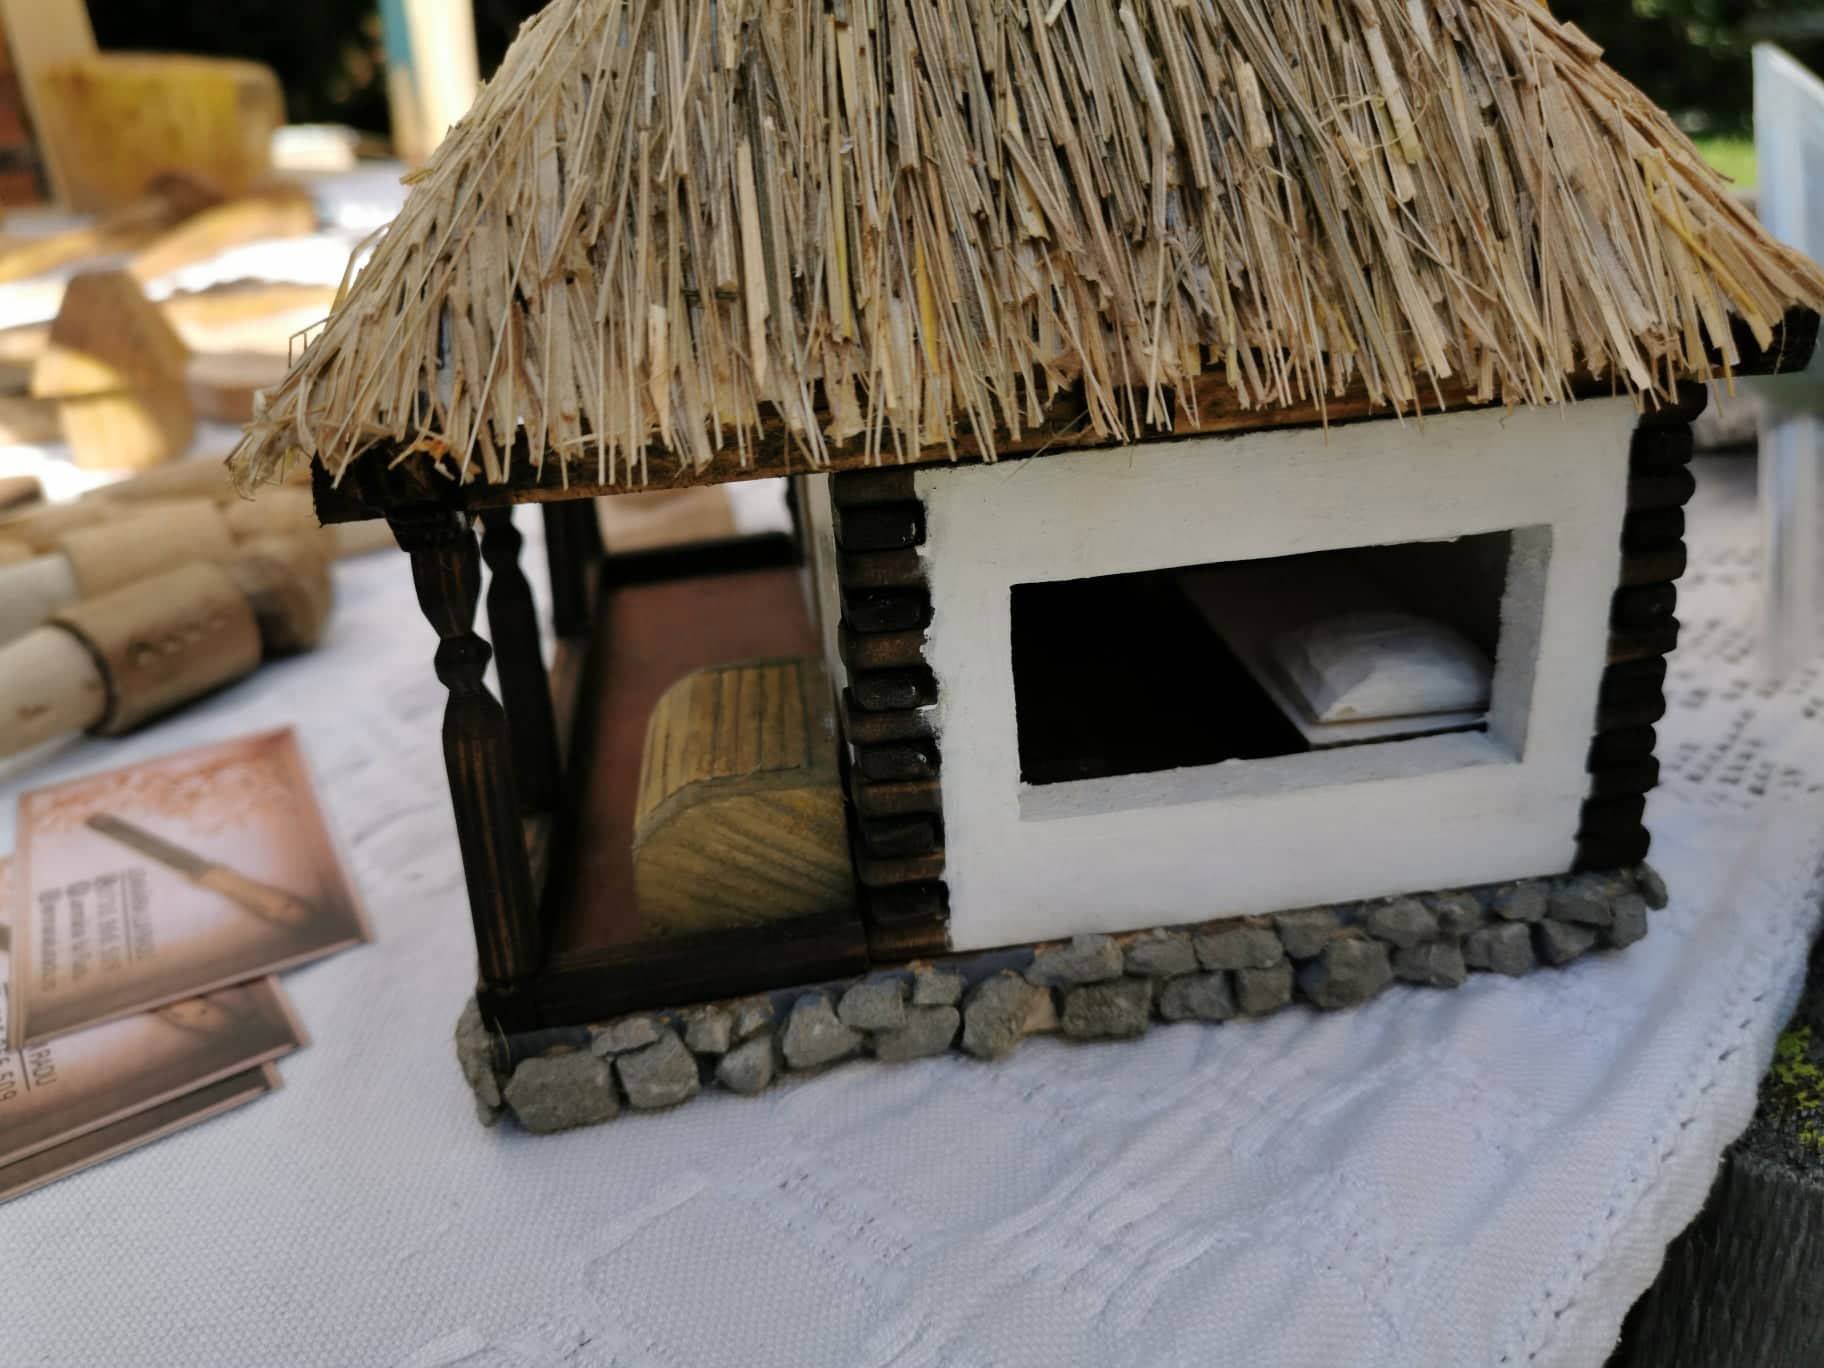 Casa traditionala in miniatura - casa oloierului din judetul Hunedoara